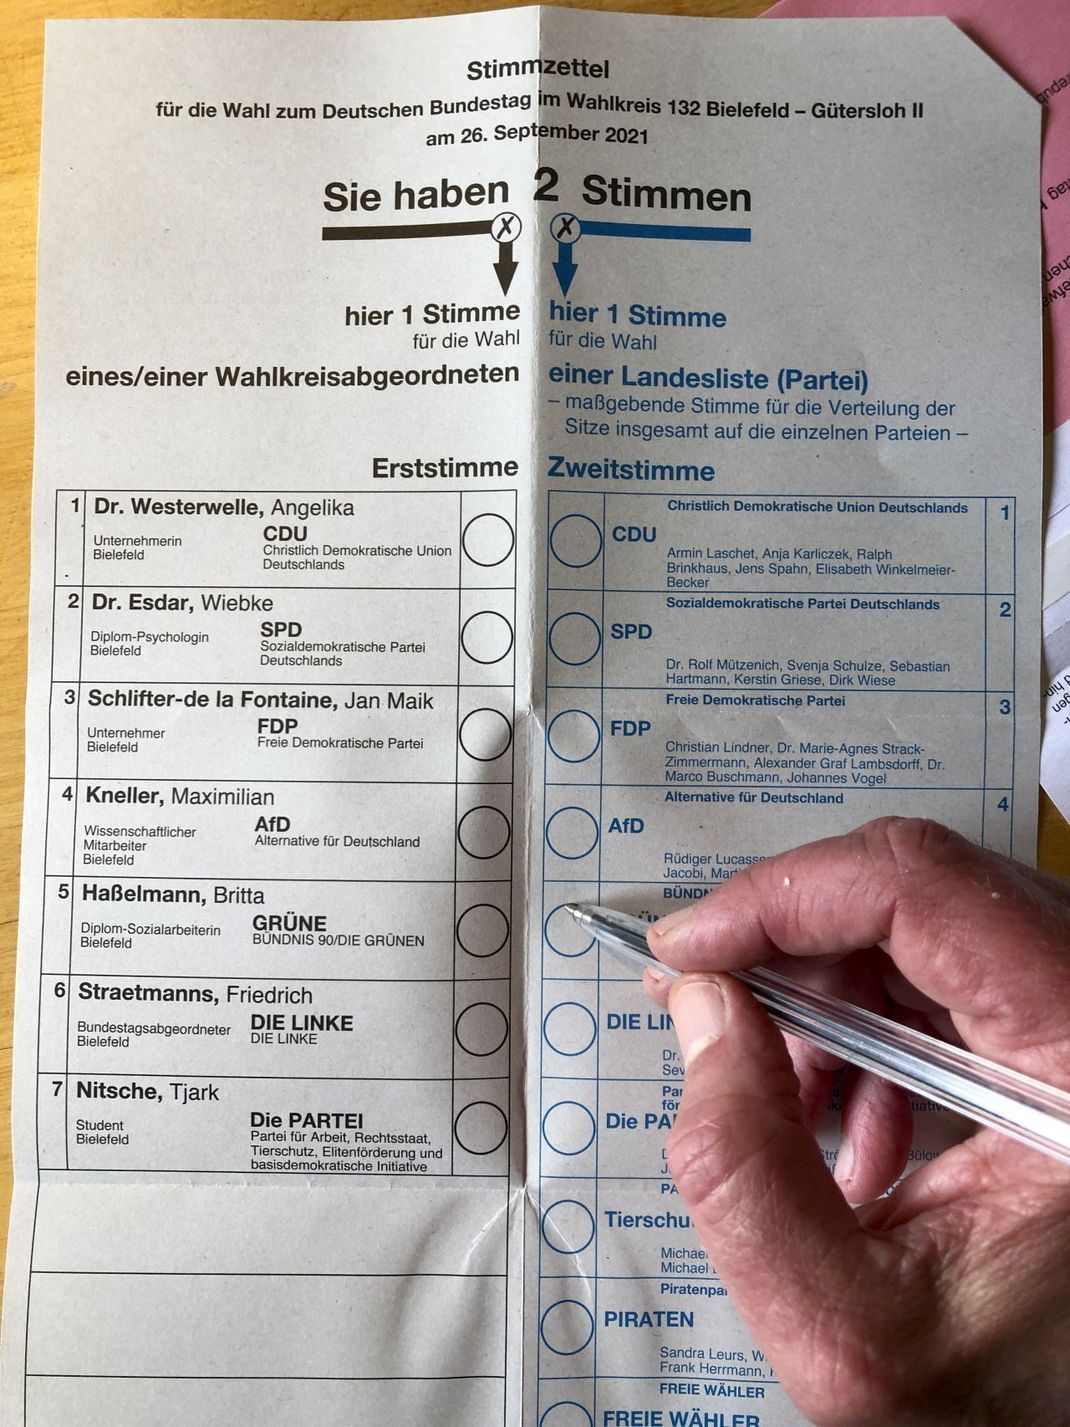 Der Wahlzettel für die Bundestagswahl 2021 am 26. September im Wahlkreis Bielefeld - Gütersloh II. 